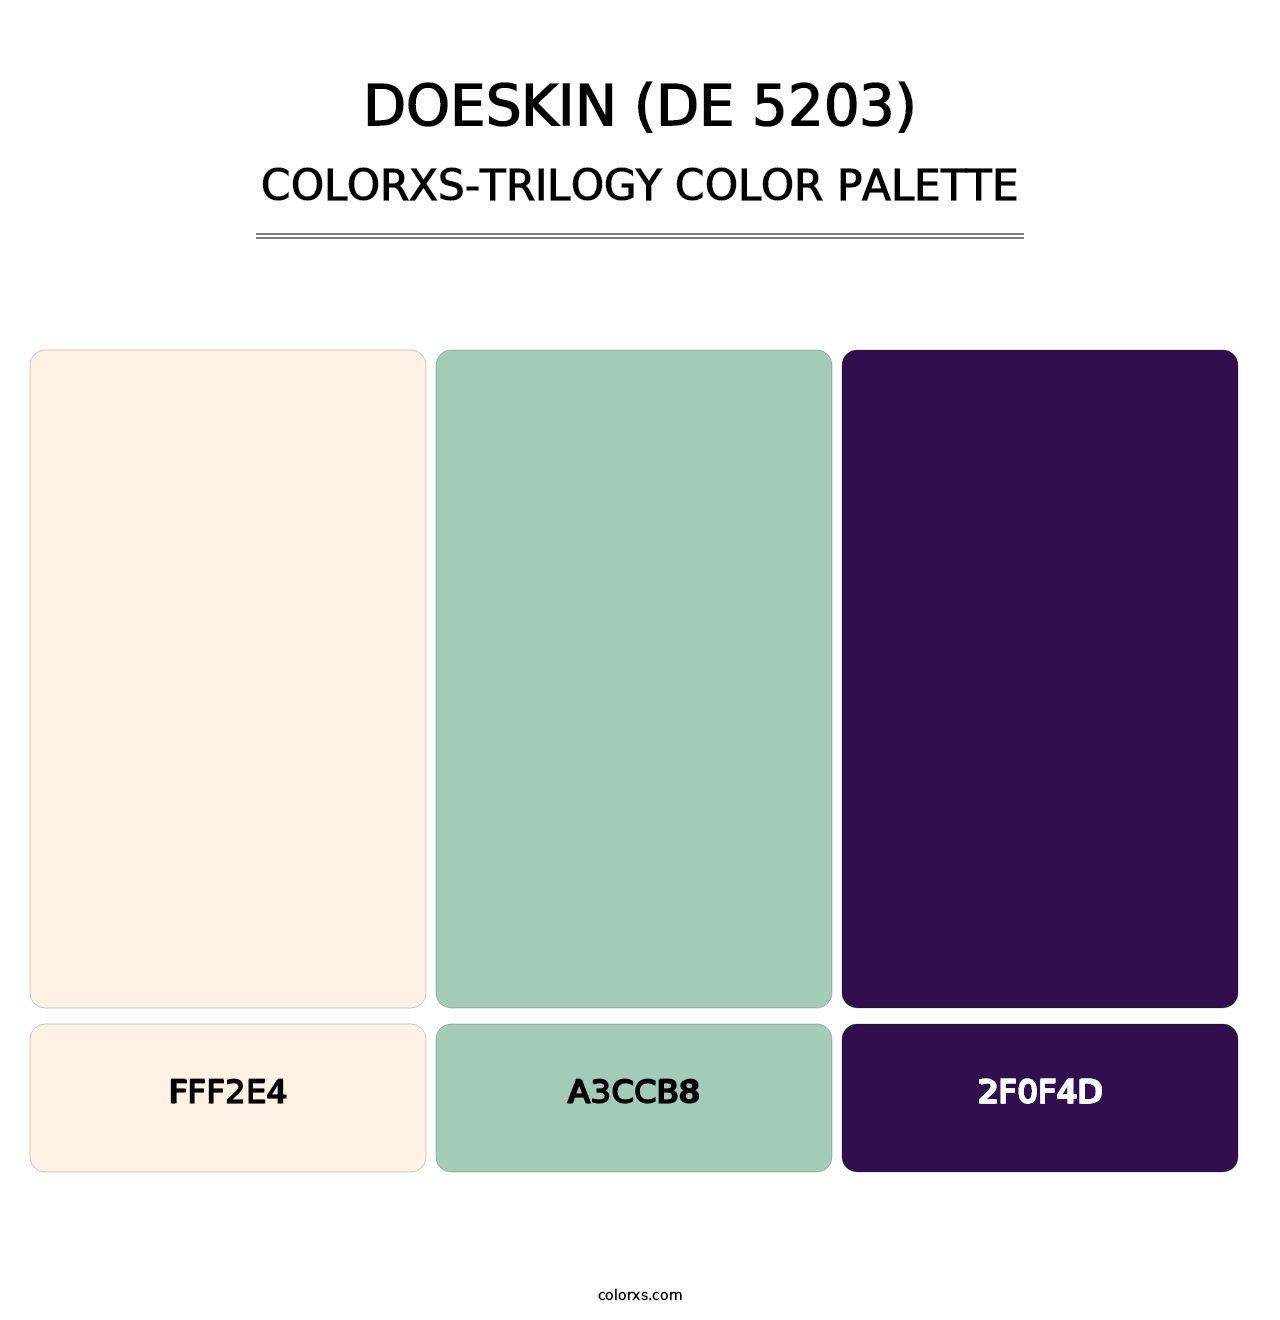 Doeskin (DE 5203) - Colorxs Trilogy Palette